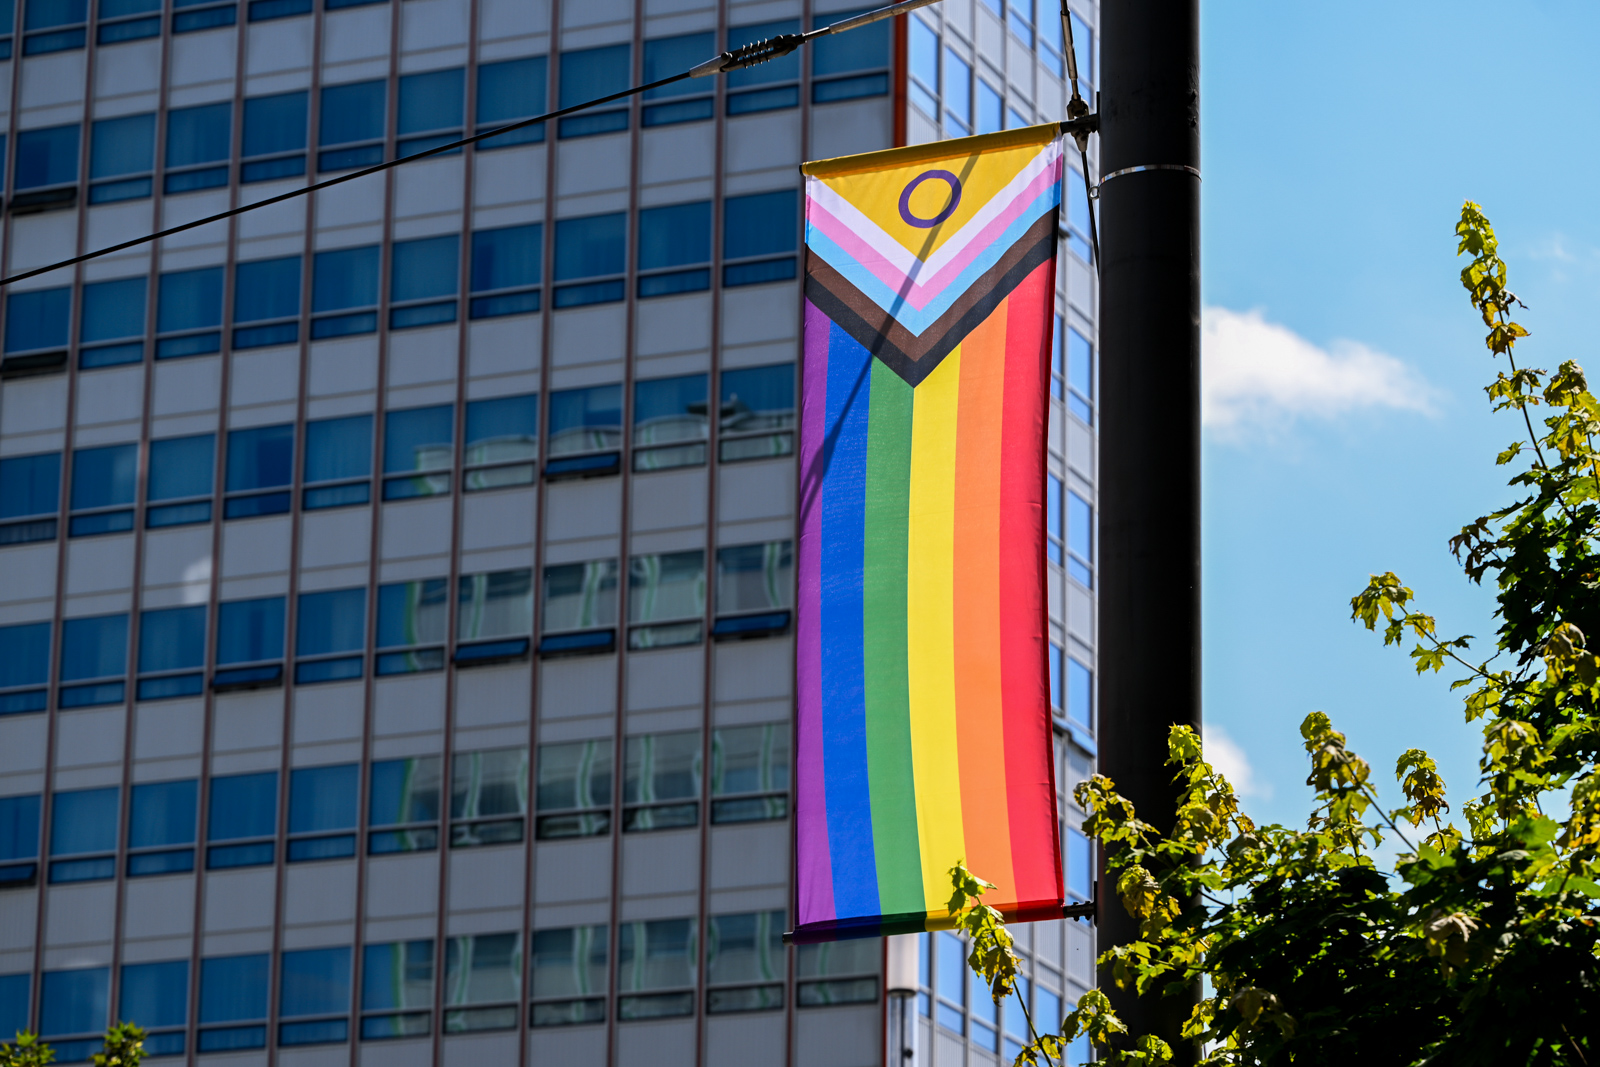 Pojawiły się flagi LGBTQ+ w centrum miasta. Przygotowania do Marszu Równości [ZDJĘCIA]